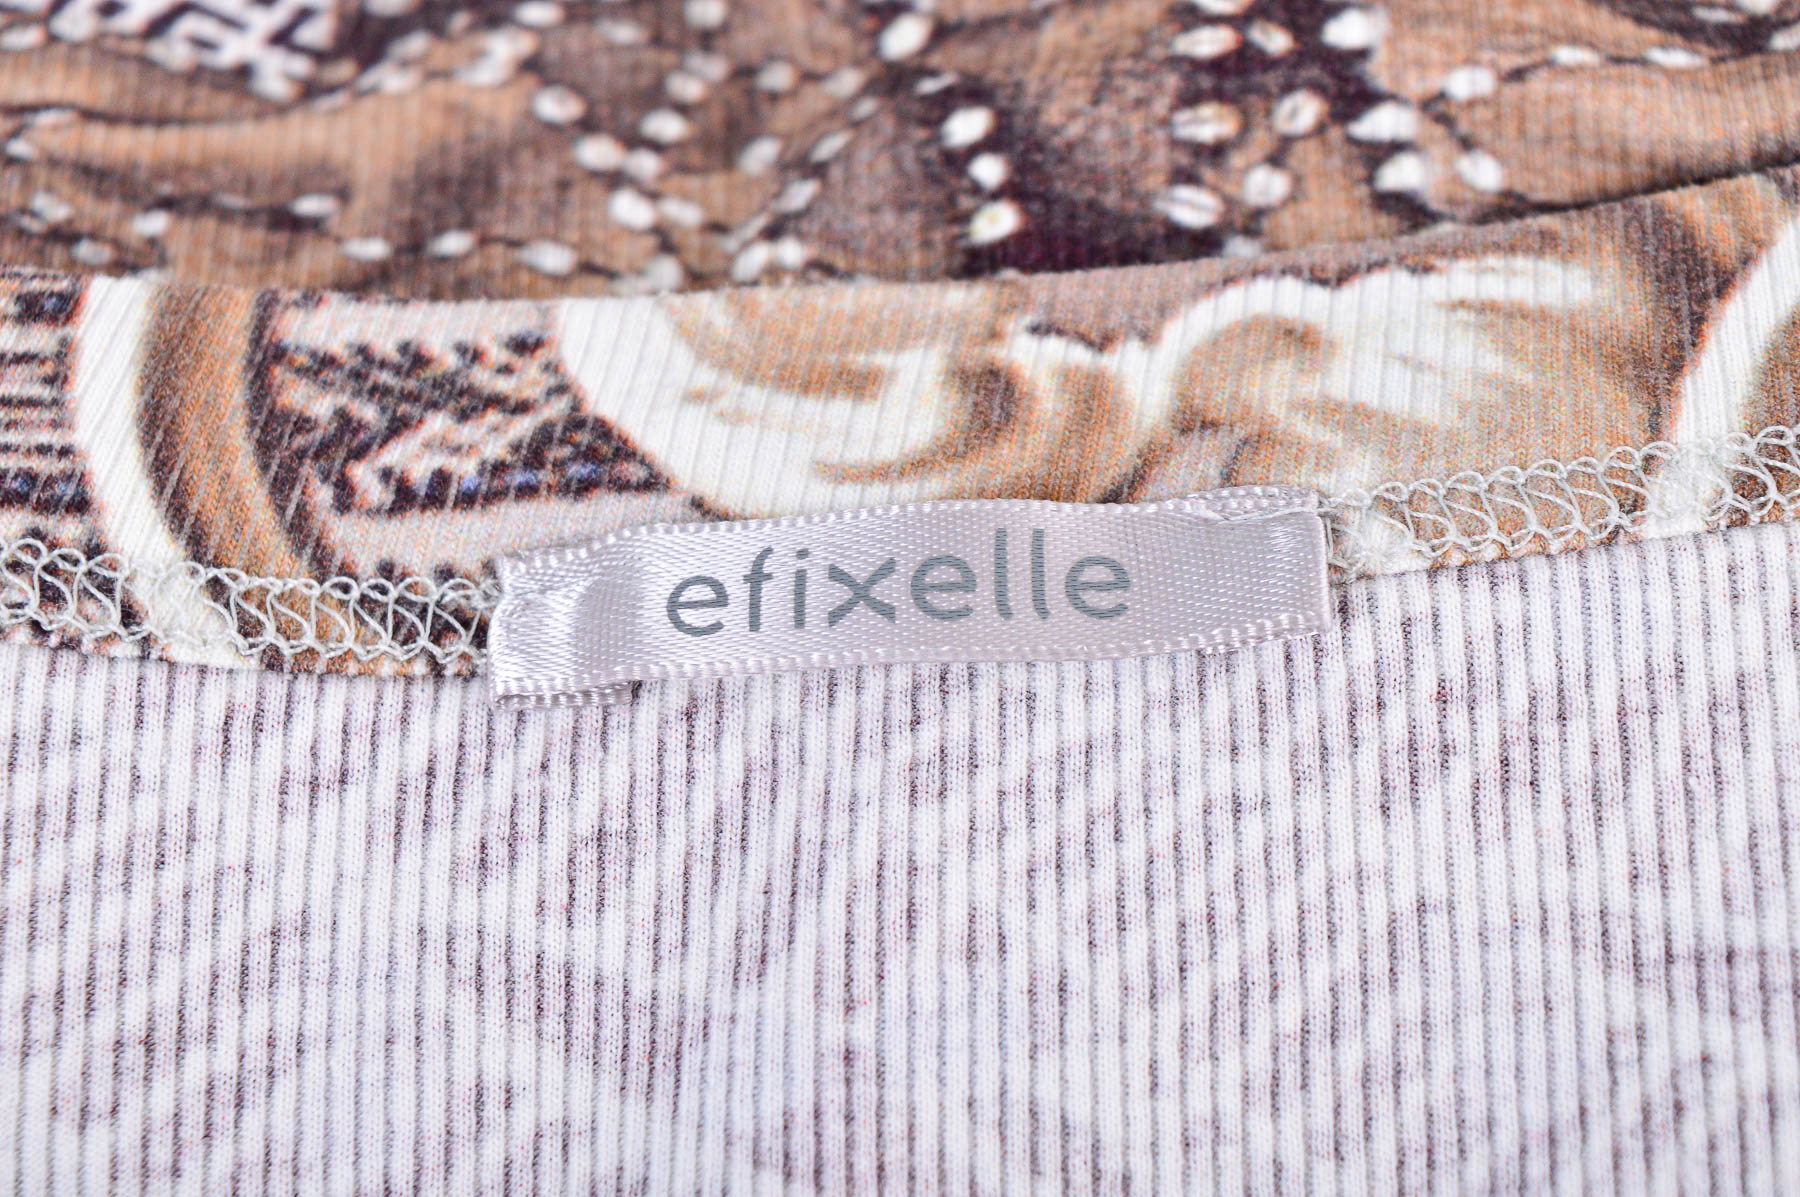 Γυναικεία μπλούζα - Efixelle - 2